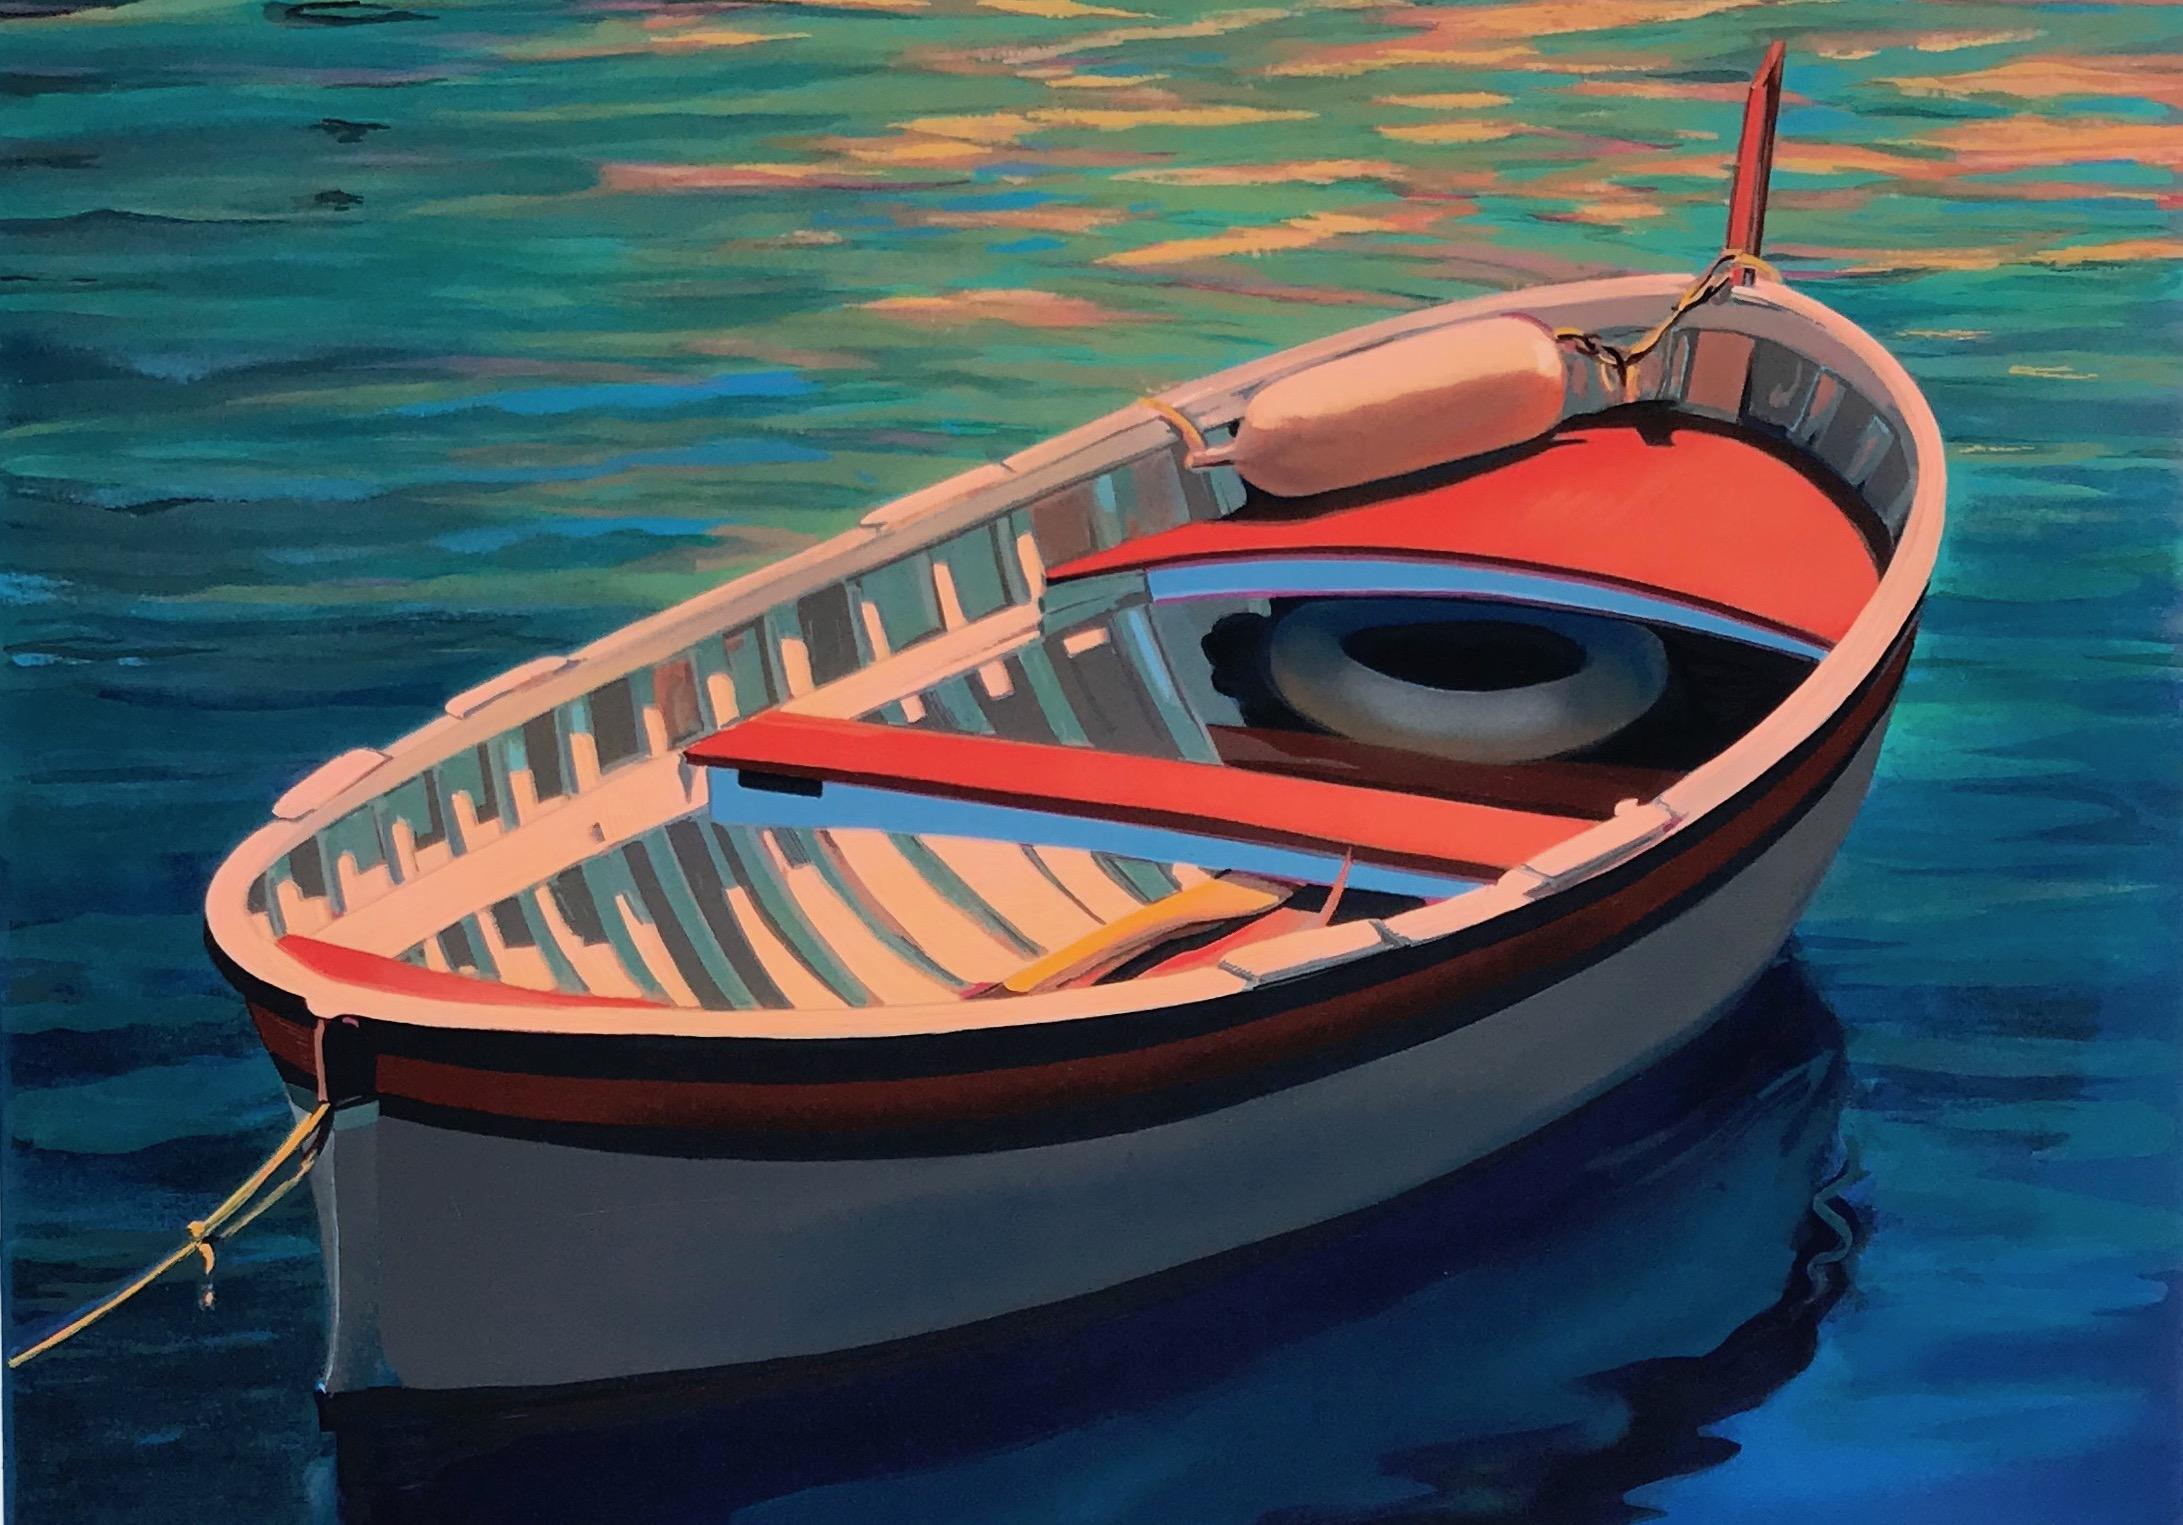  Serigraphie de bateau coloré « Harbor Rainbow » aux reflets d'eau bleu profond - Print de Tom Swimm